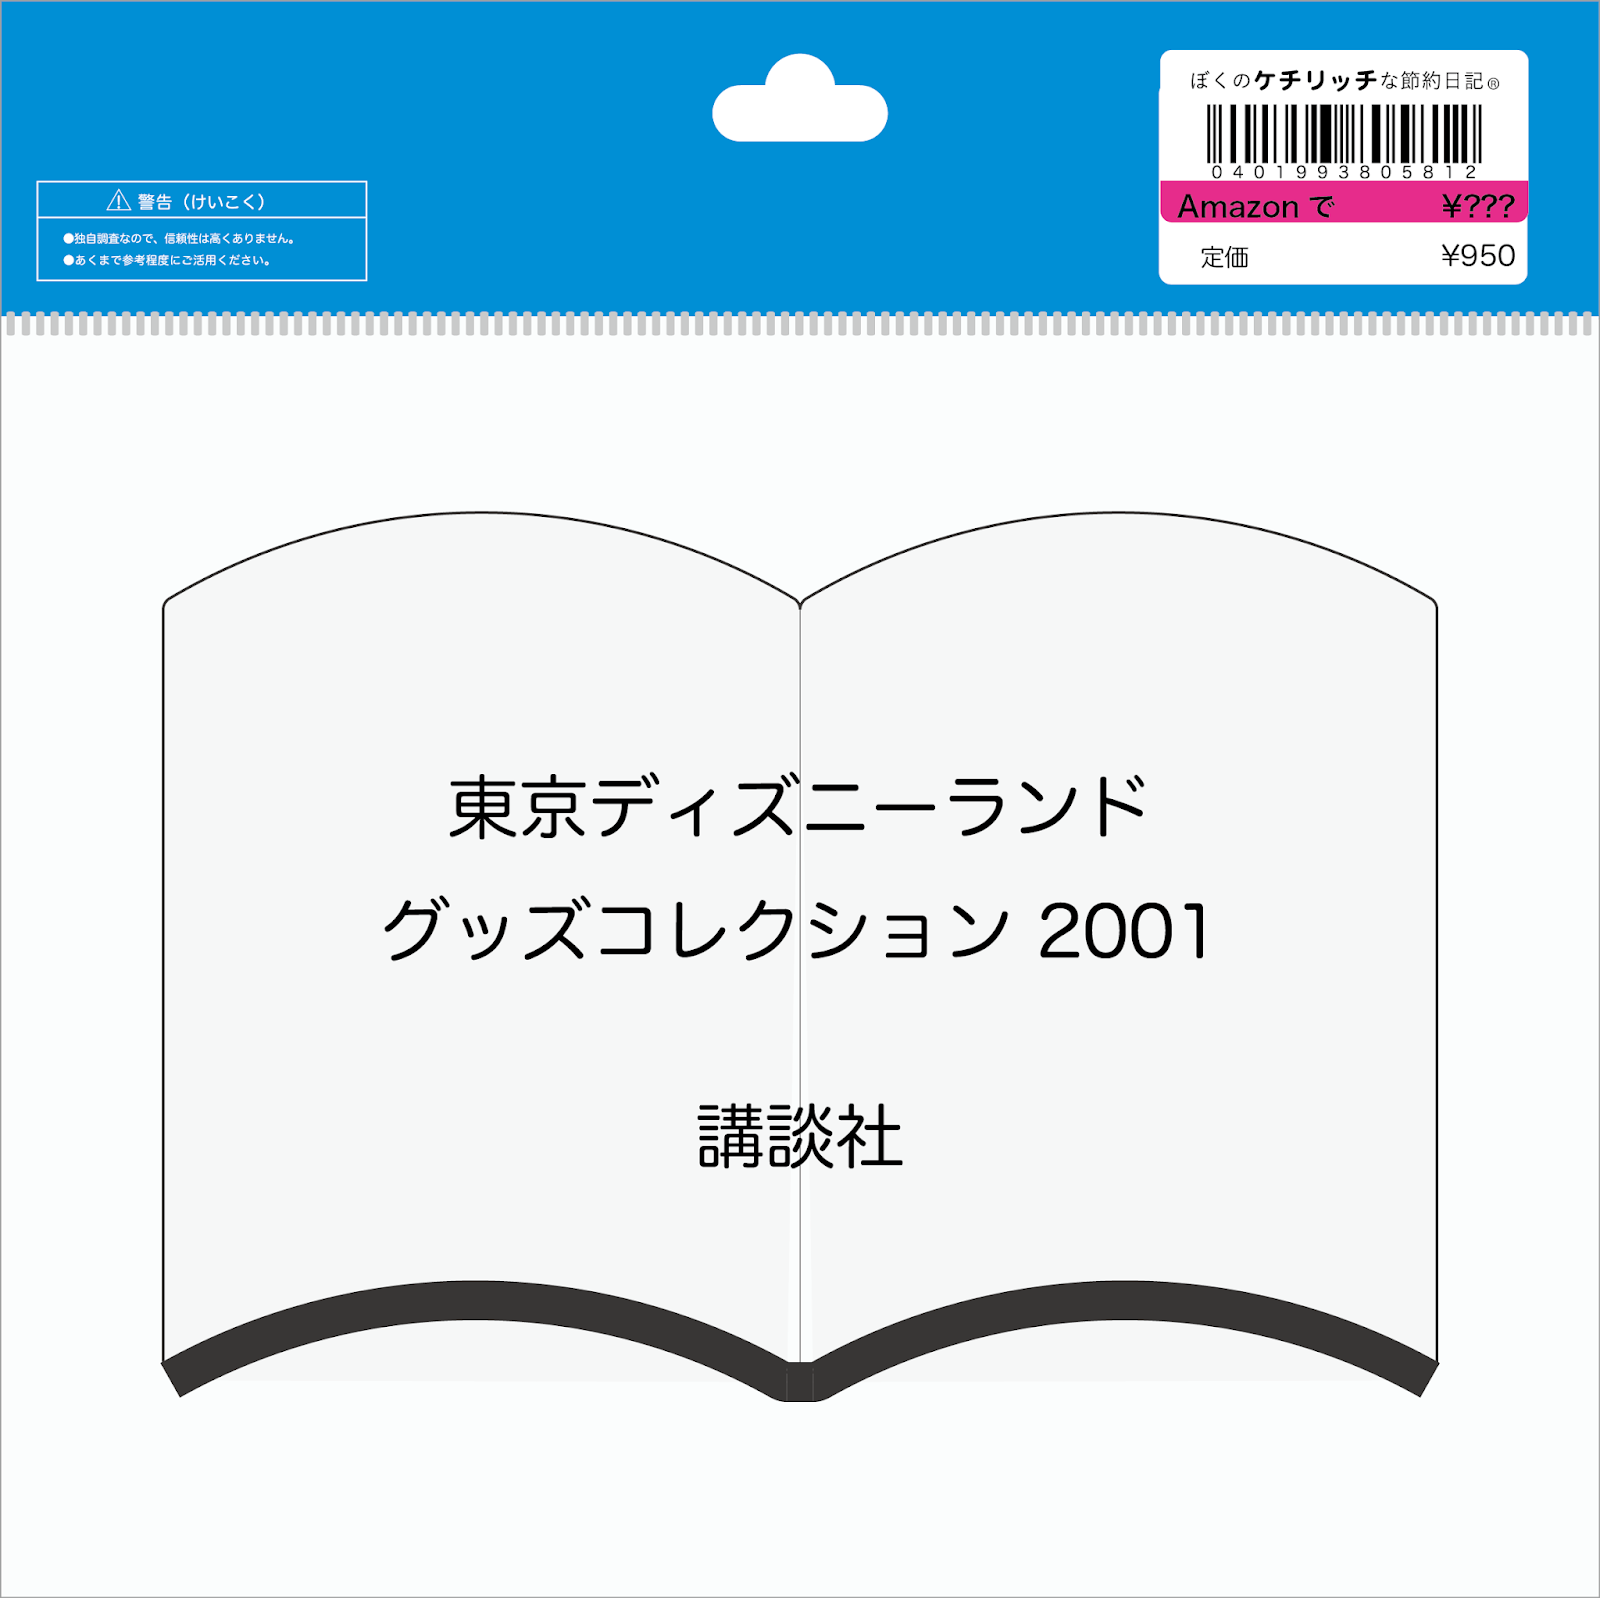 ディズニーの本 東京ディズニーランド グッズコレクション 01 を読んでみた ぼくのケチリッチな節約日記